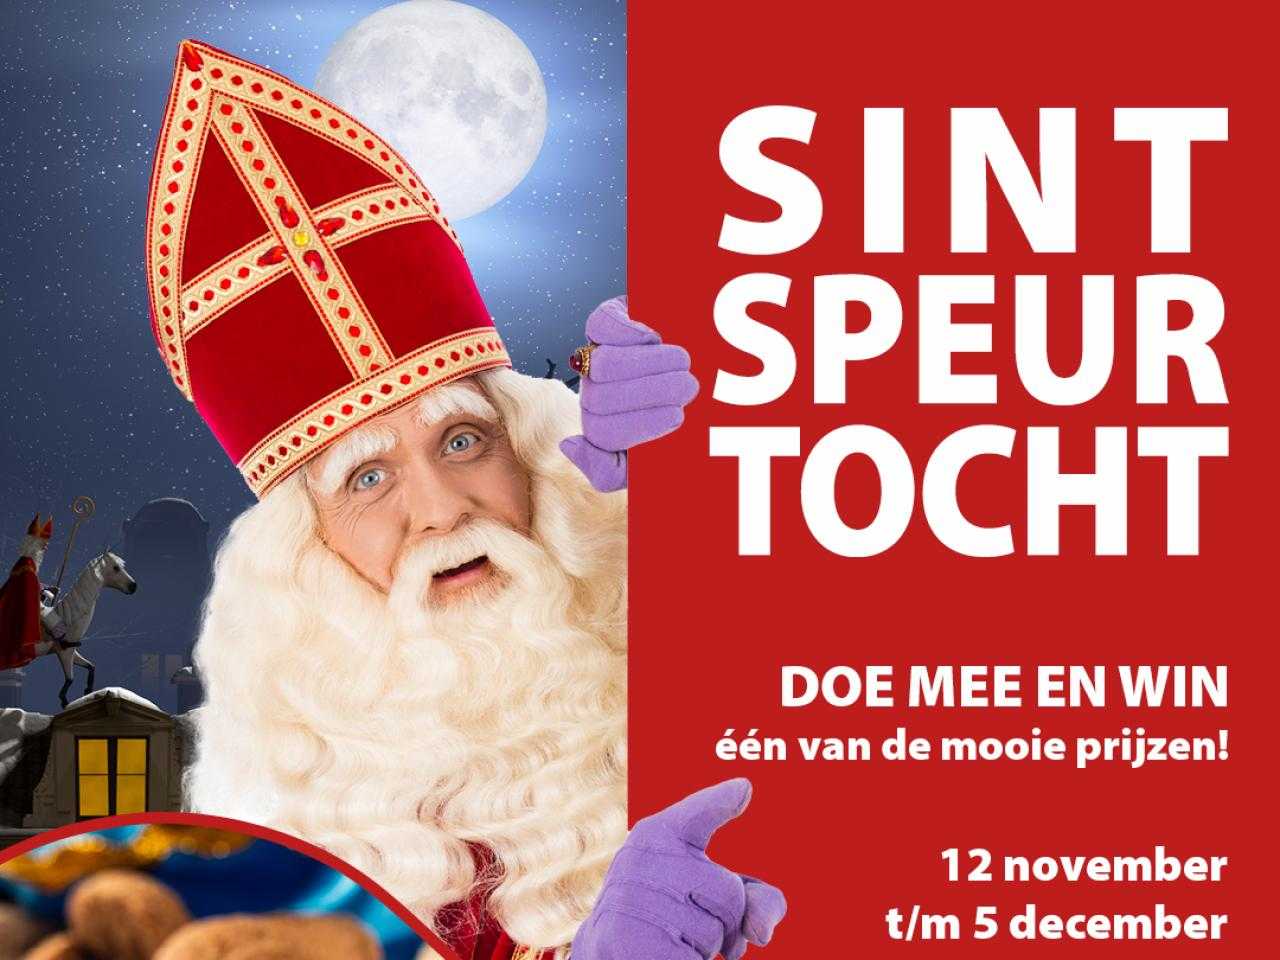 Sinterklaas speurtocht